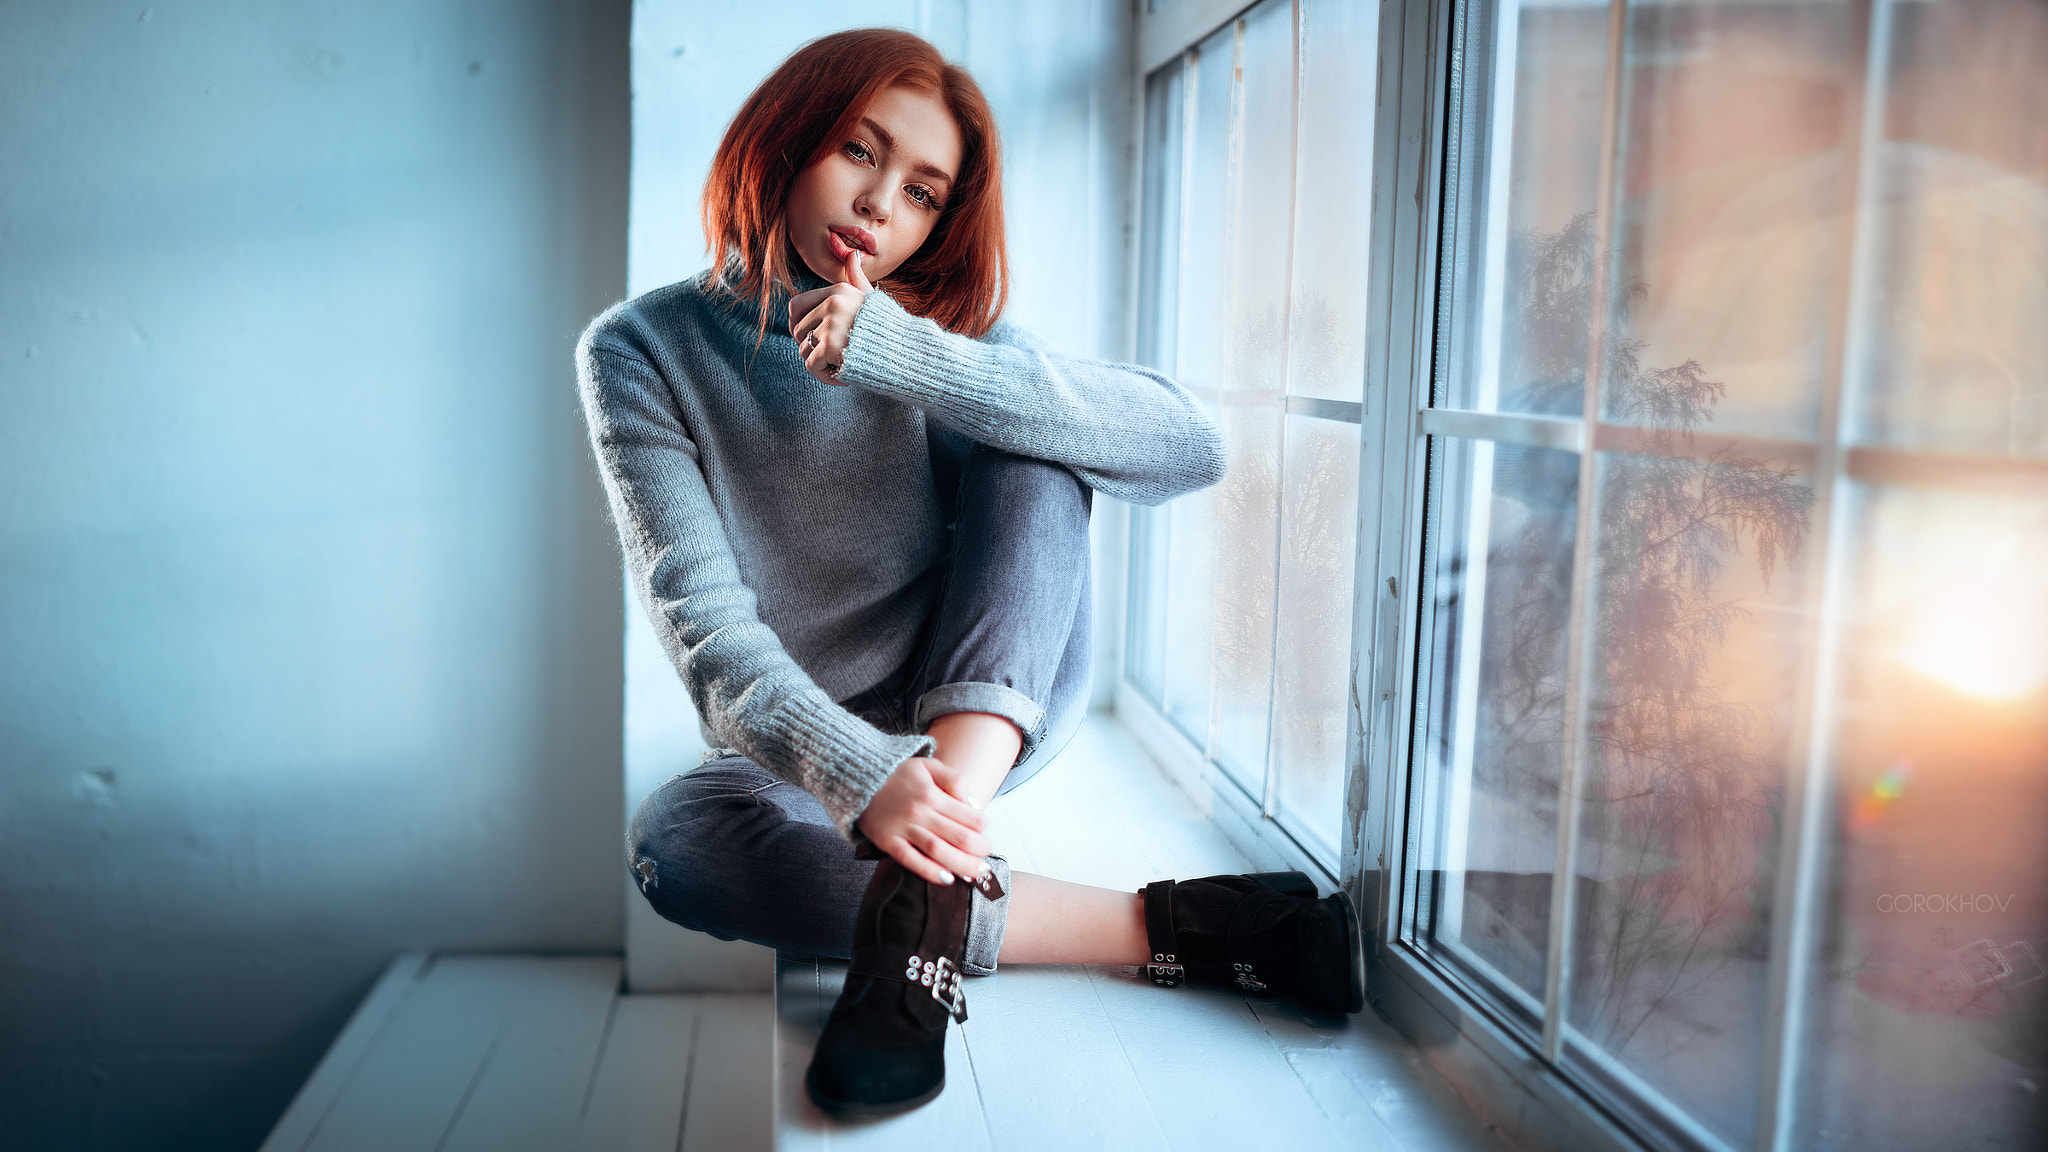 Women Model Ivan Gorokhov 500px Sweater Redhead Jeans Blue Sweater Finger On Lips Renata W 2048x1152